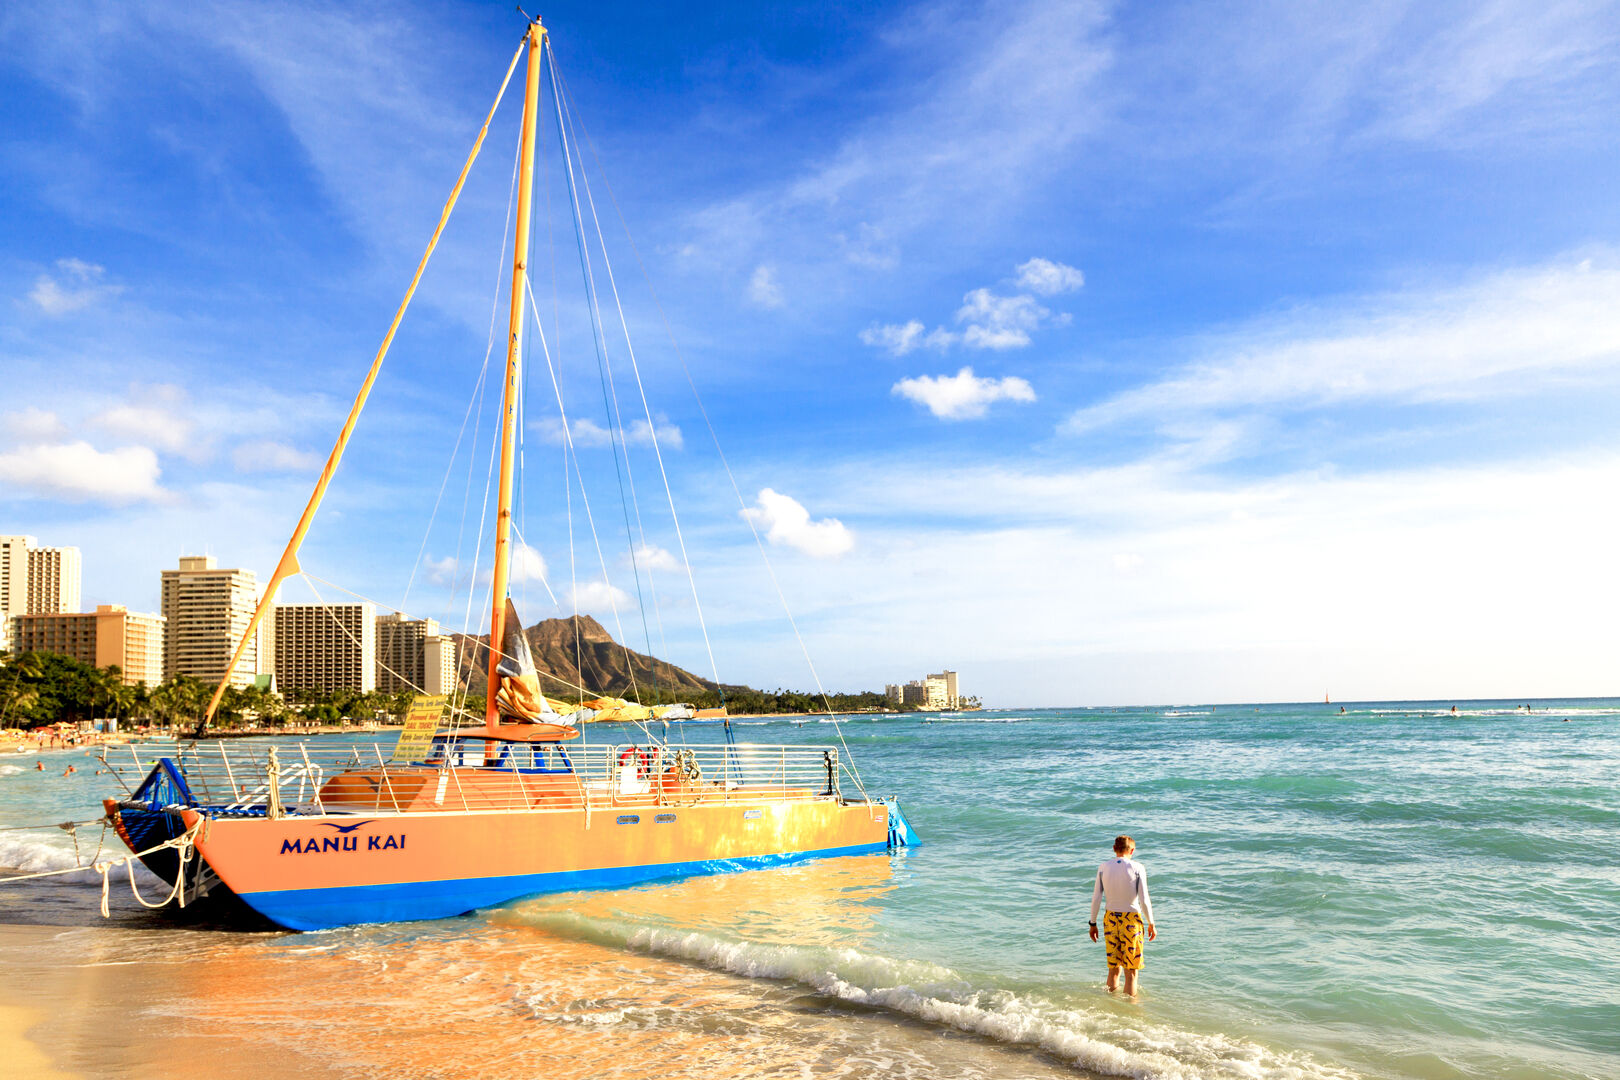 Waikiki Beach - enjoy catamaran cruises